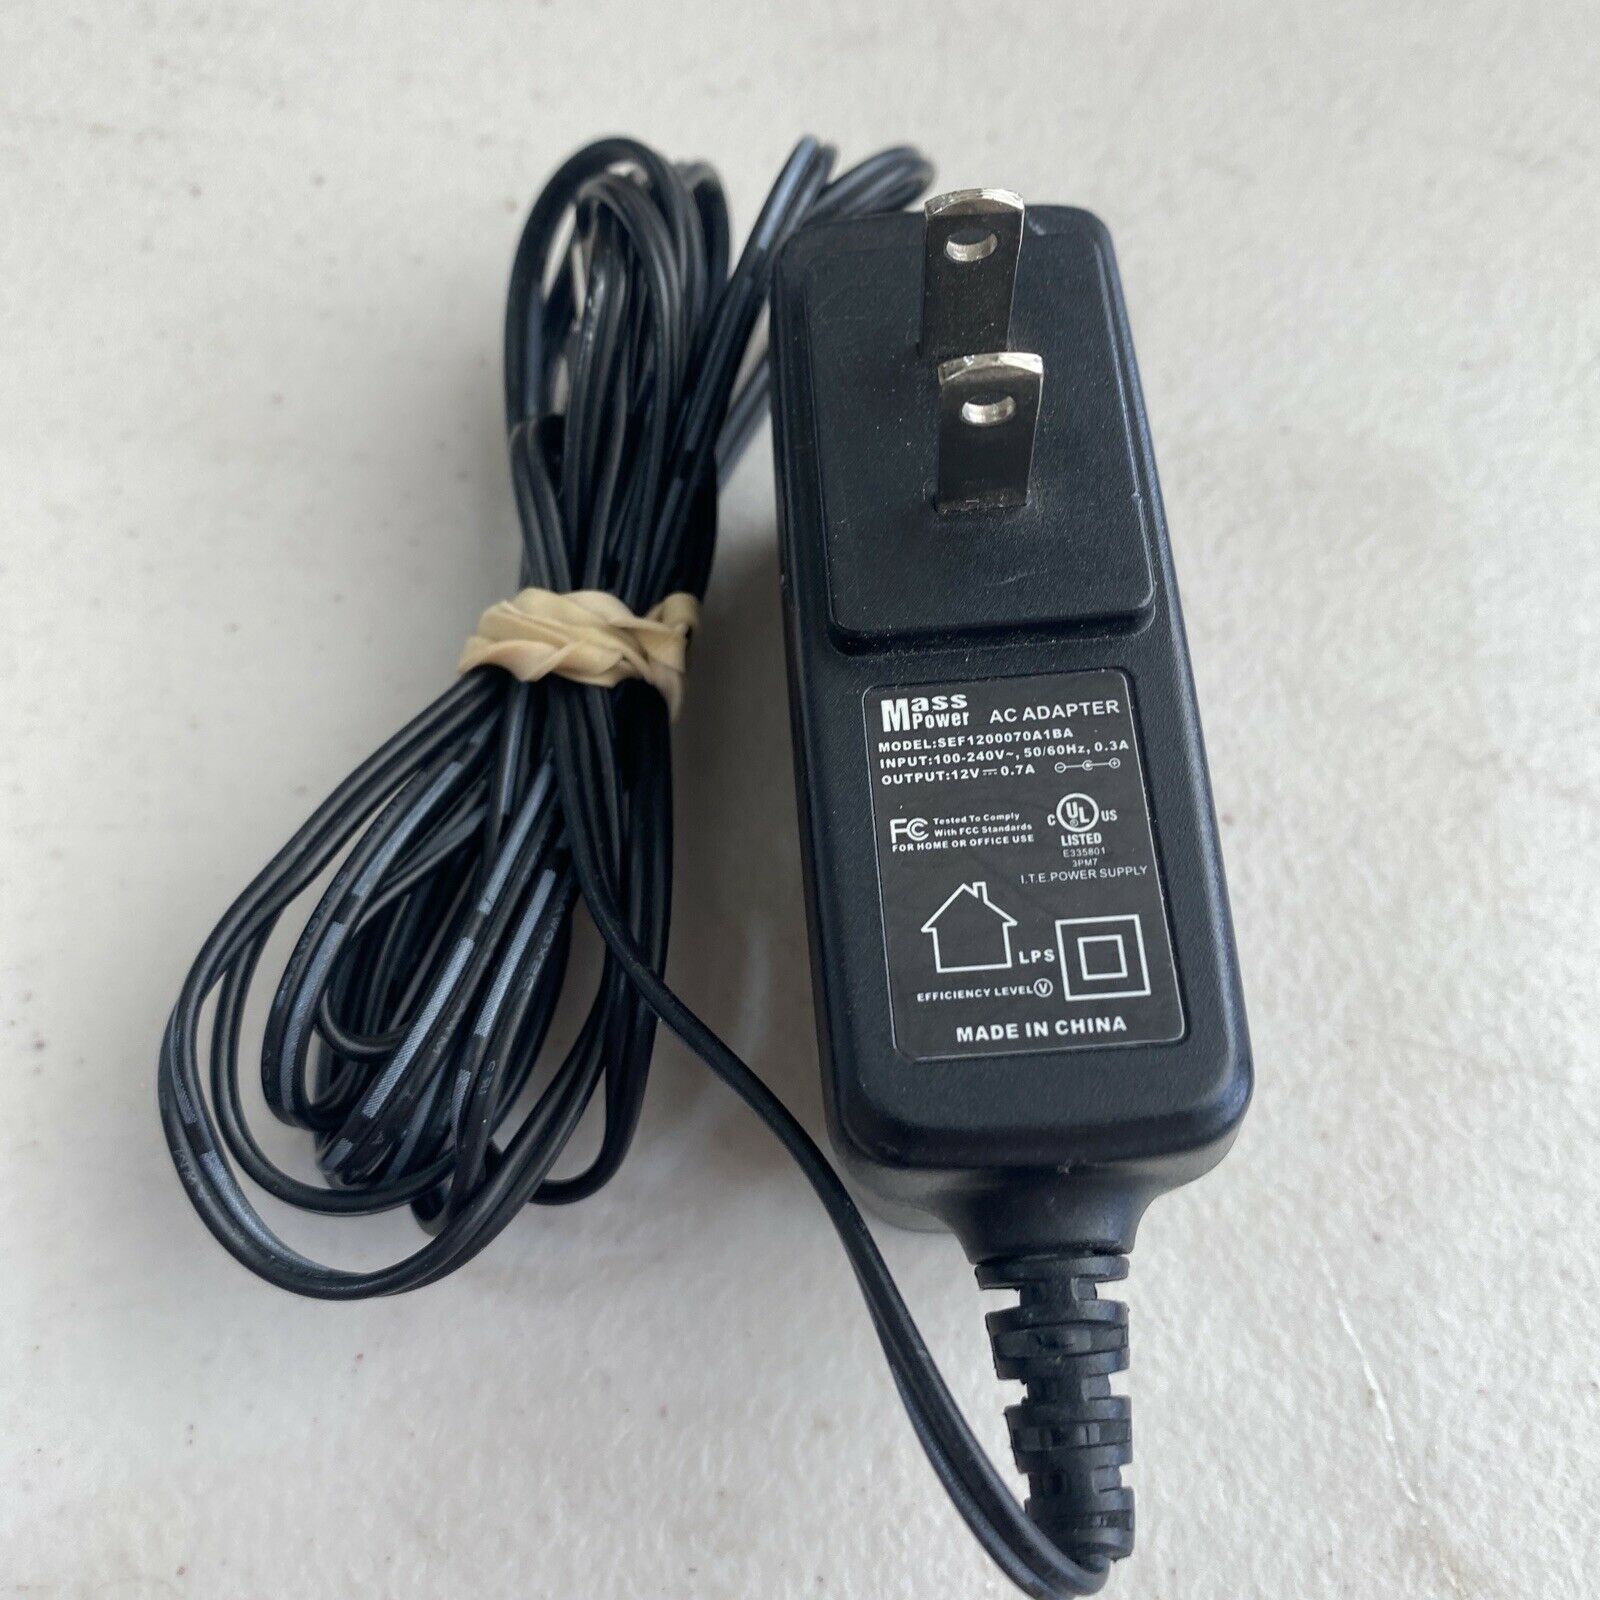 Genuine Mass Power AC Adapter Model SEF1200070A1BA Plug Power Cord Brand: Mass Power Type: Adapter Model: SEF1200